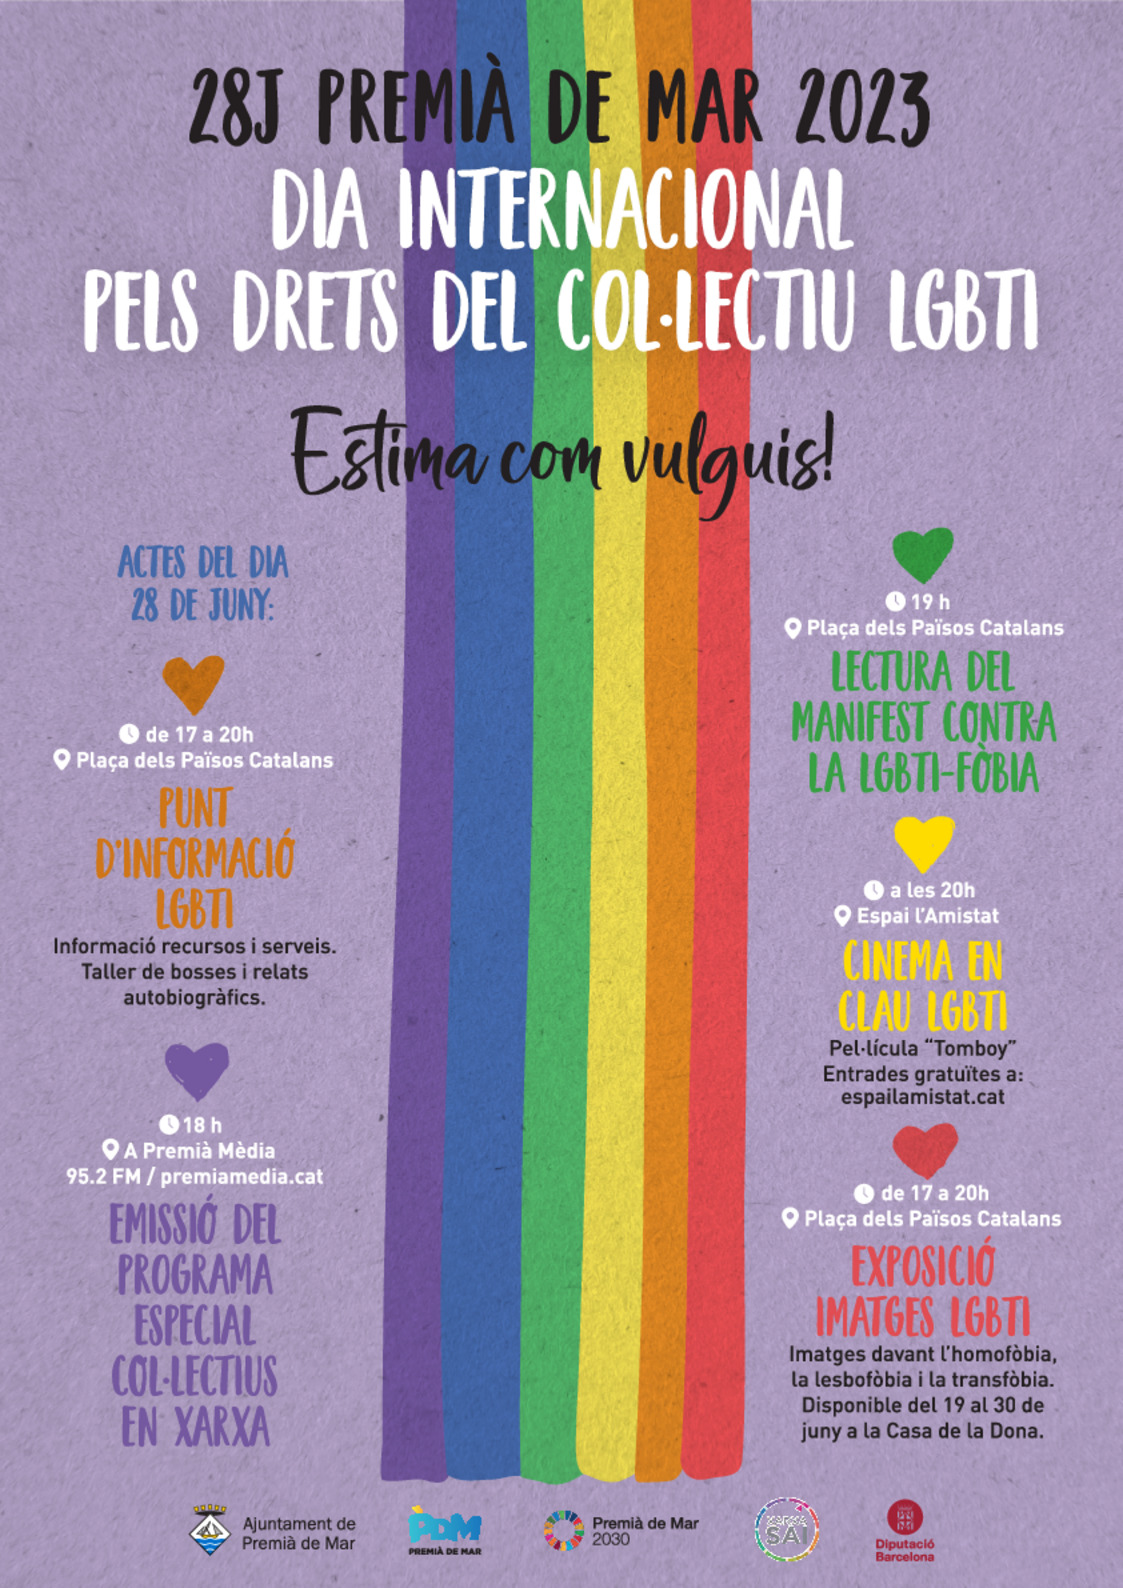 Lectura del Manifest contra la LGBTI-fòbia